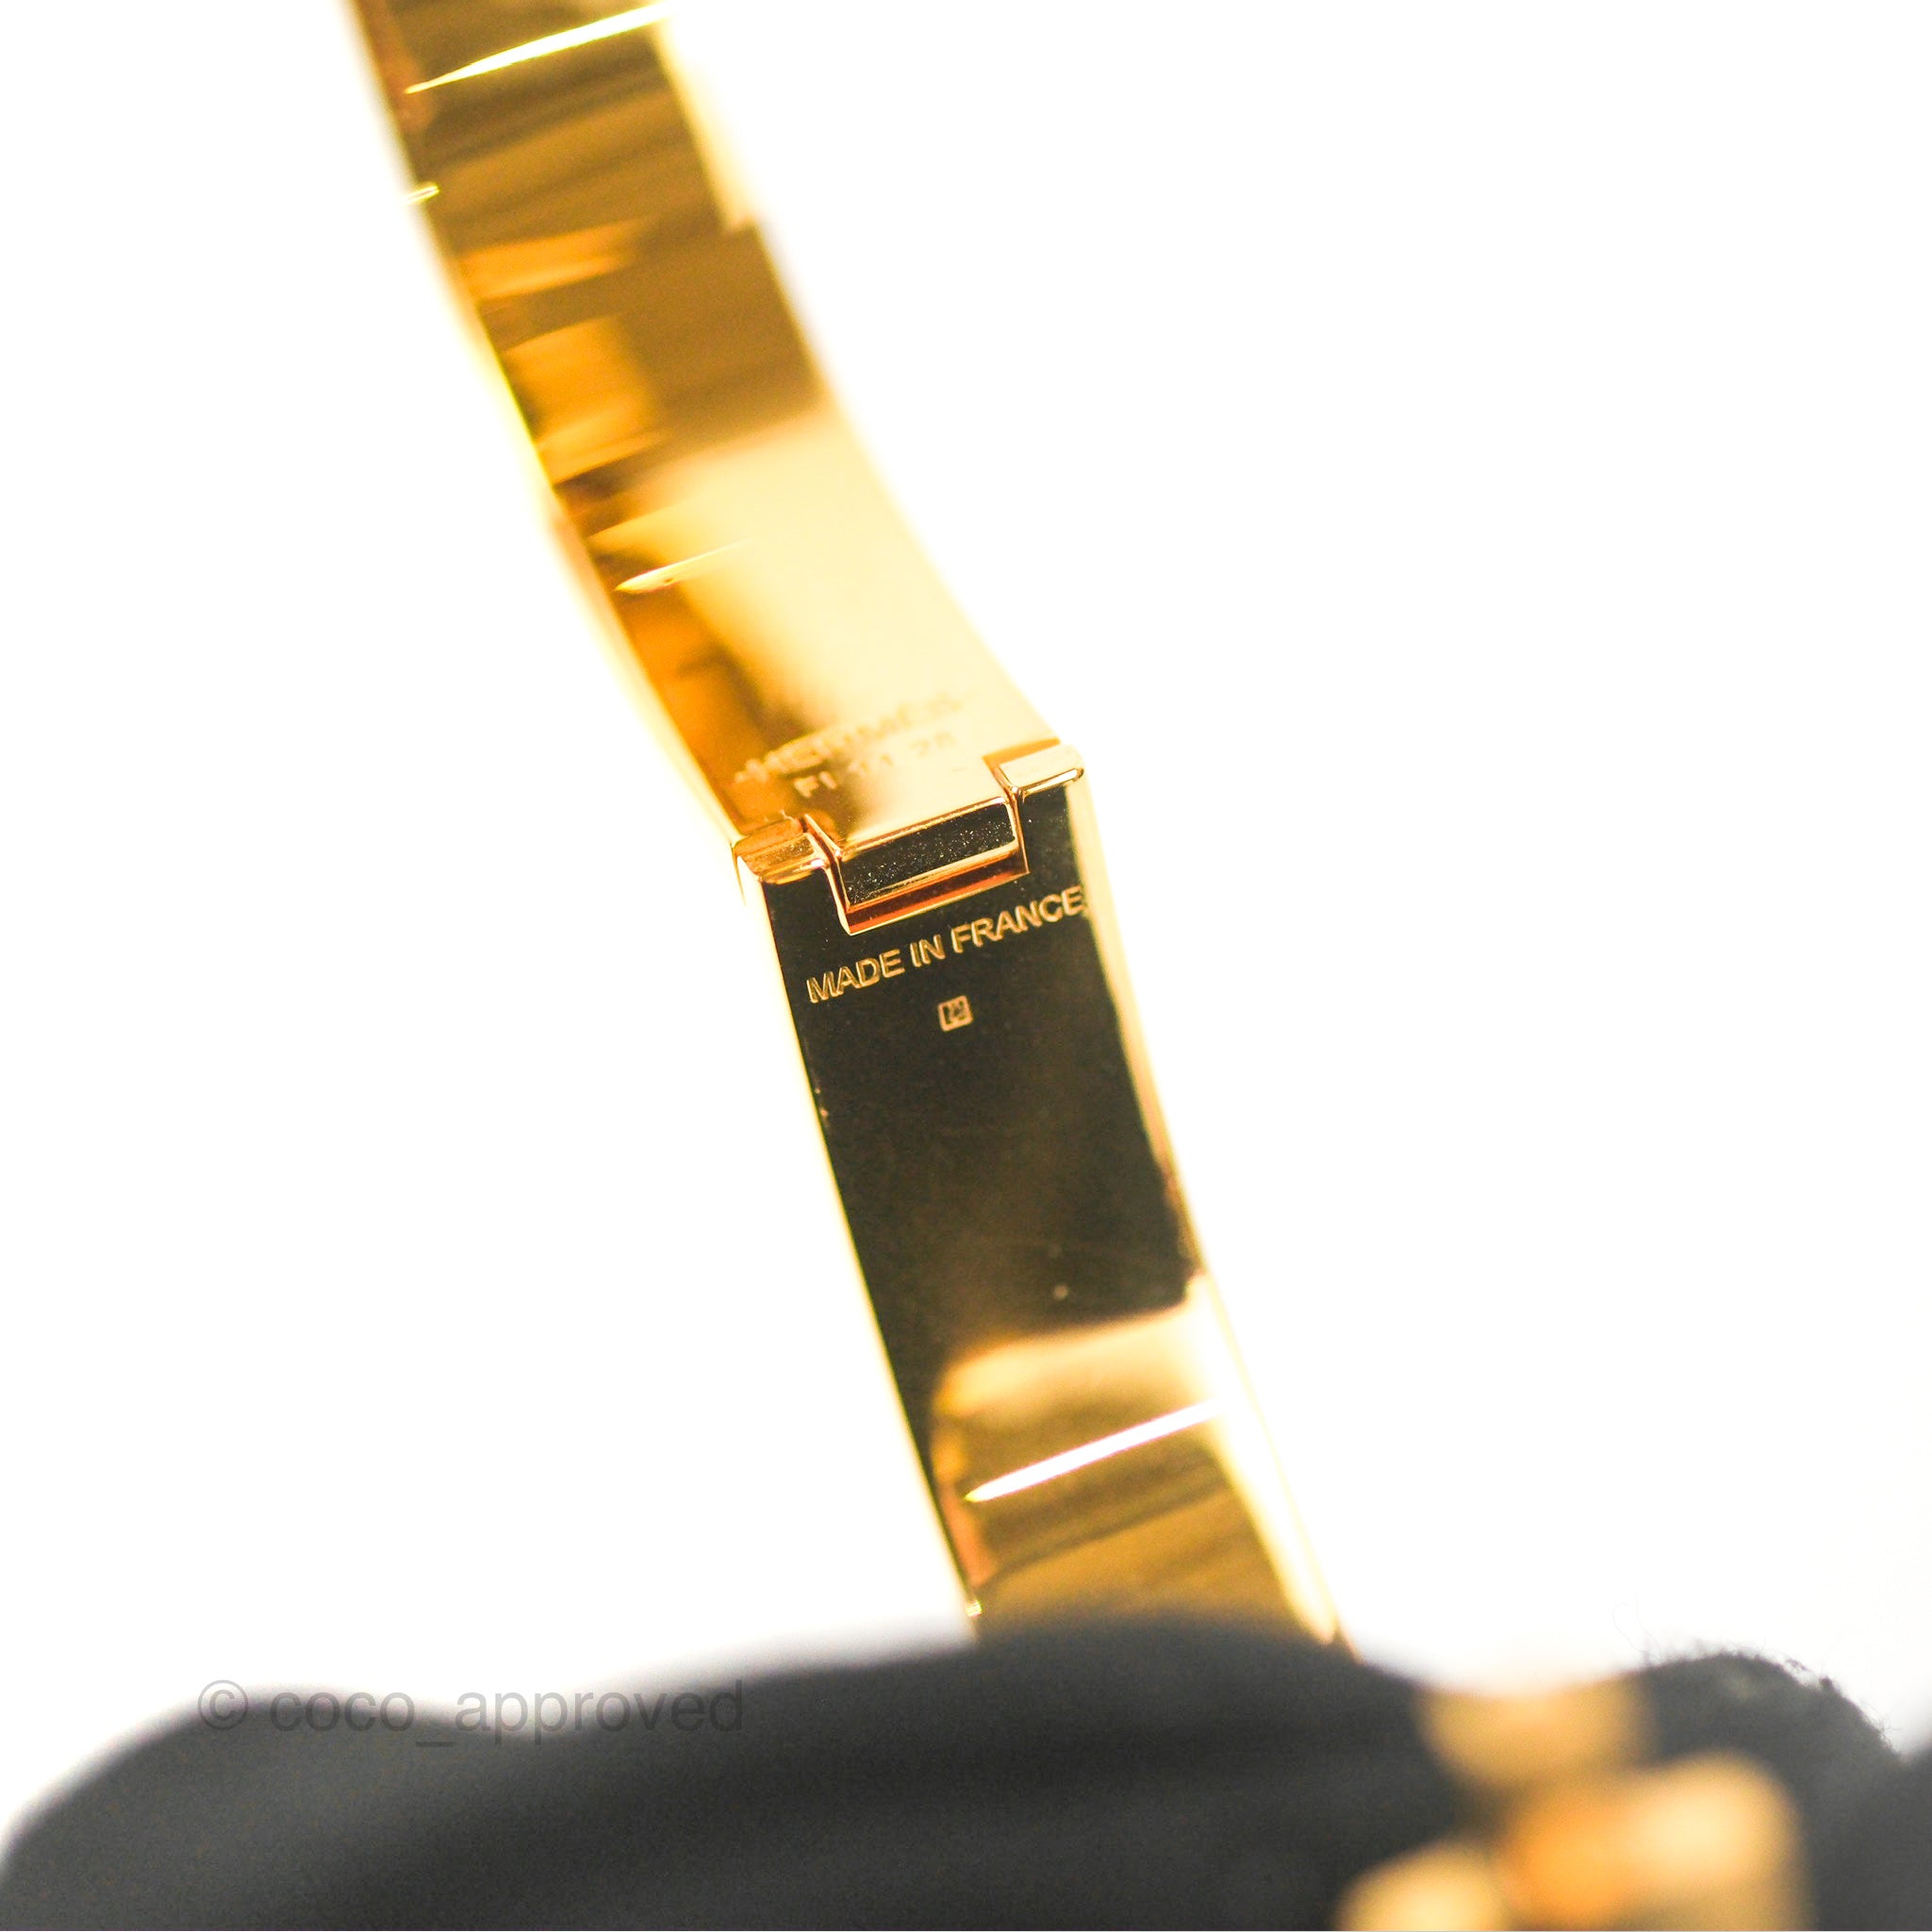 Hermès Clic HH Bracelet Matte Black Brushed Gold – Coco Approved